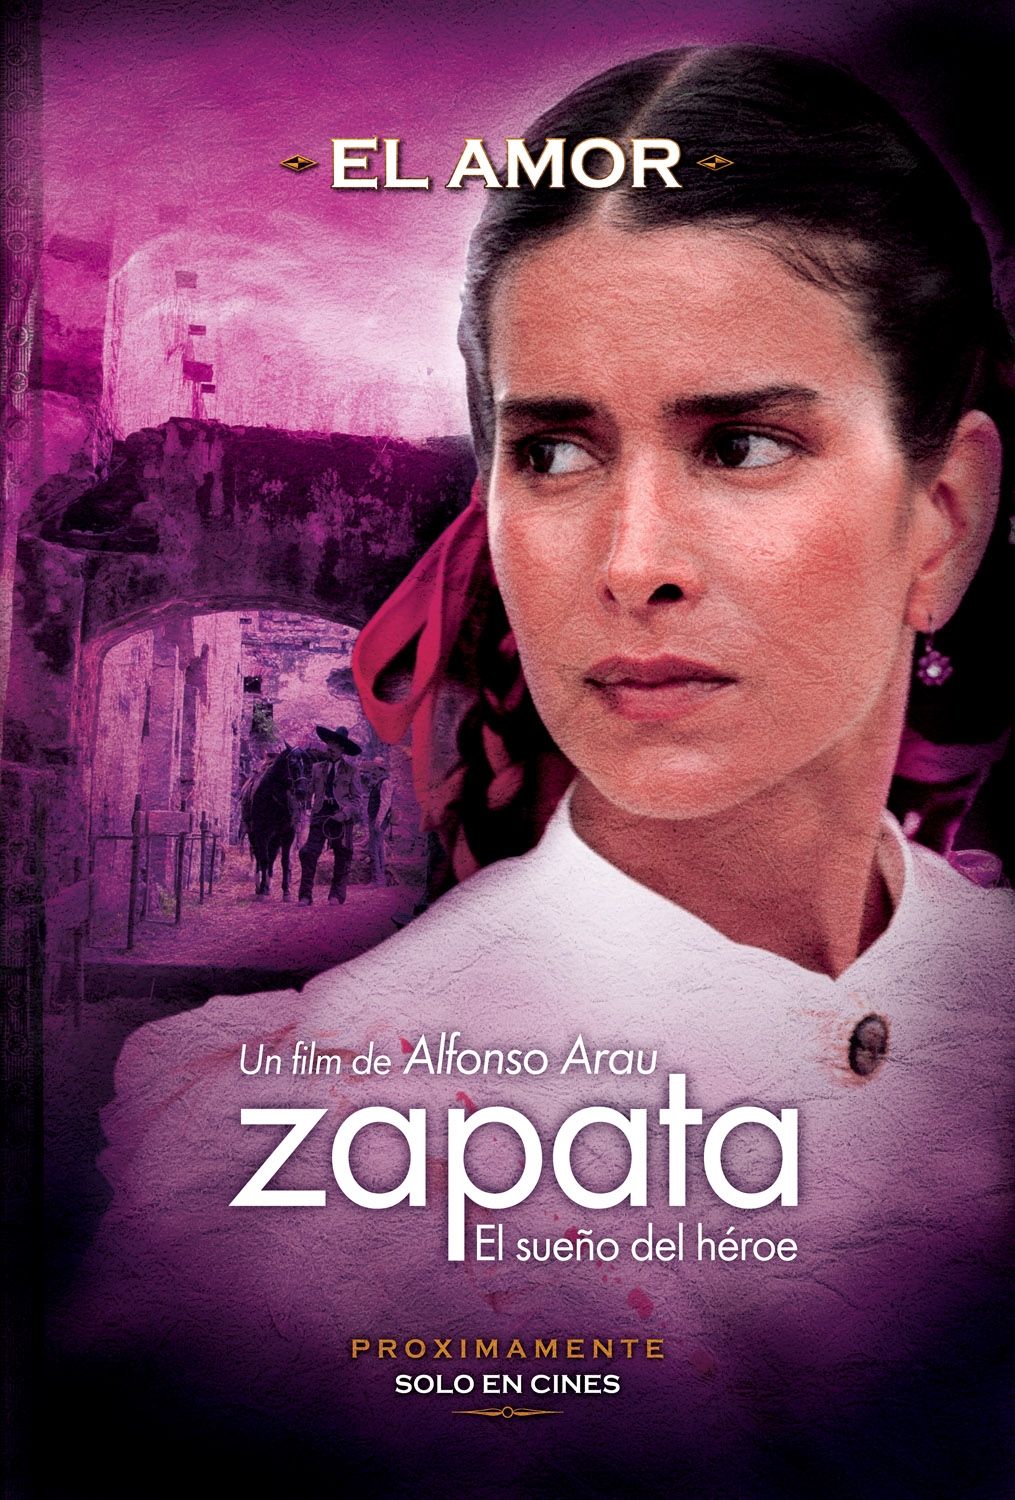 Extra Large Movie Poster Image for Zapata - El sueño del héroe (#5 of 6)